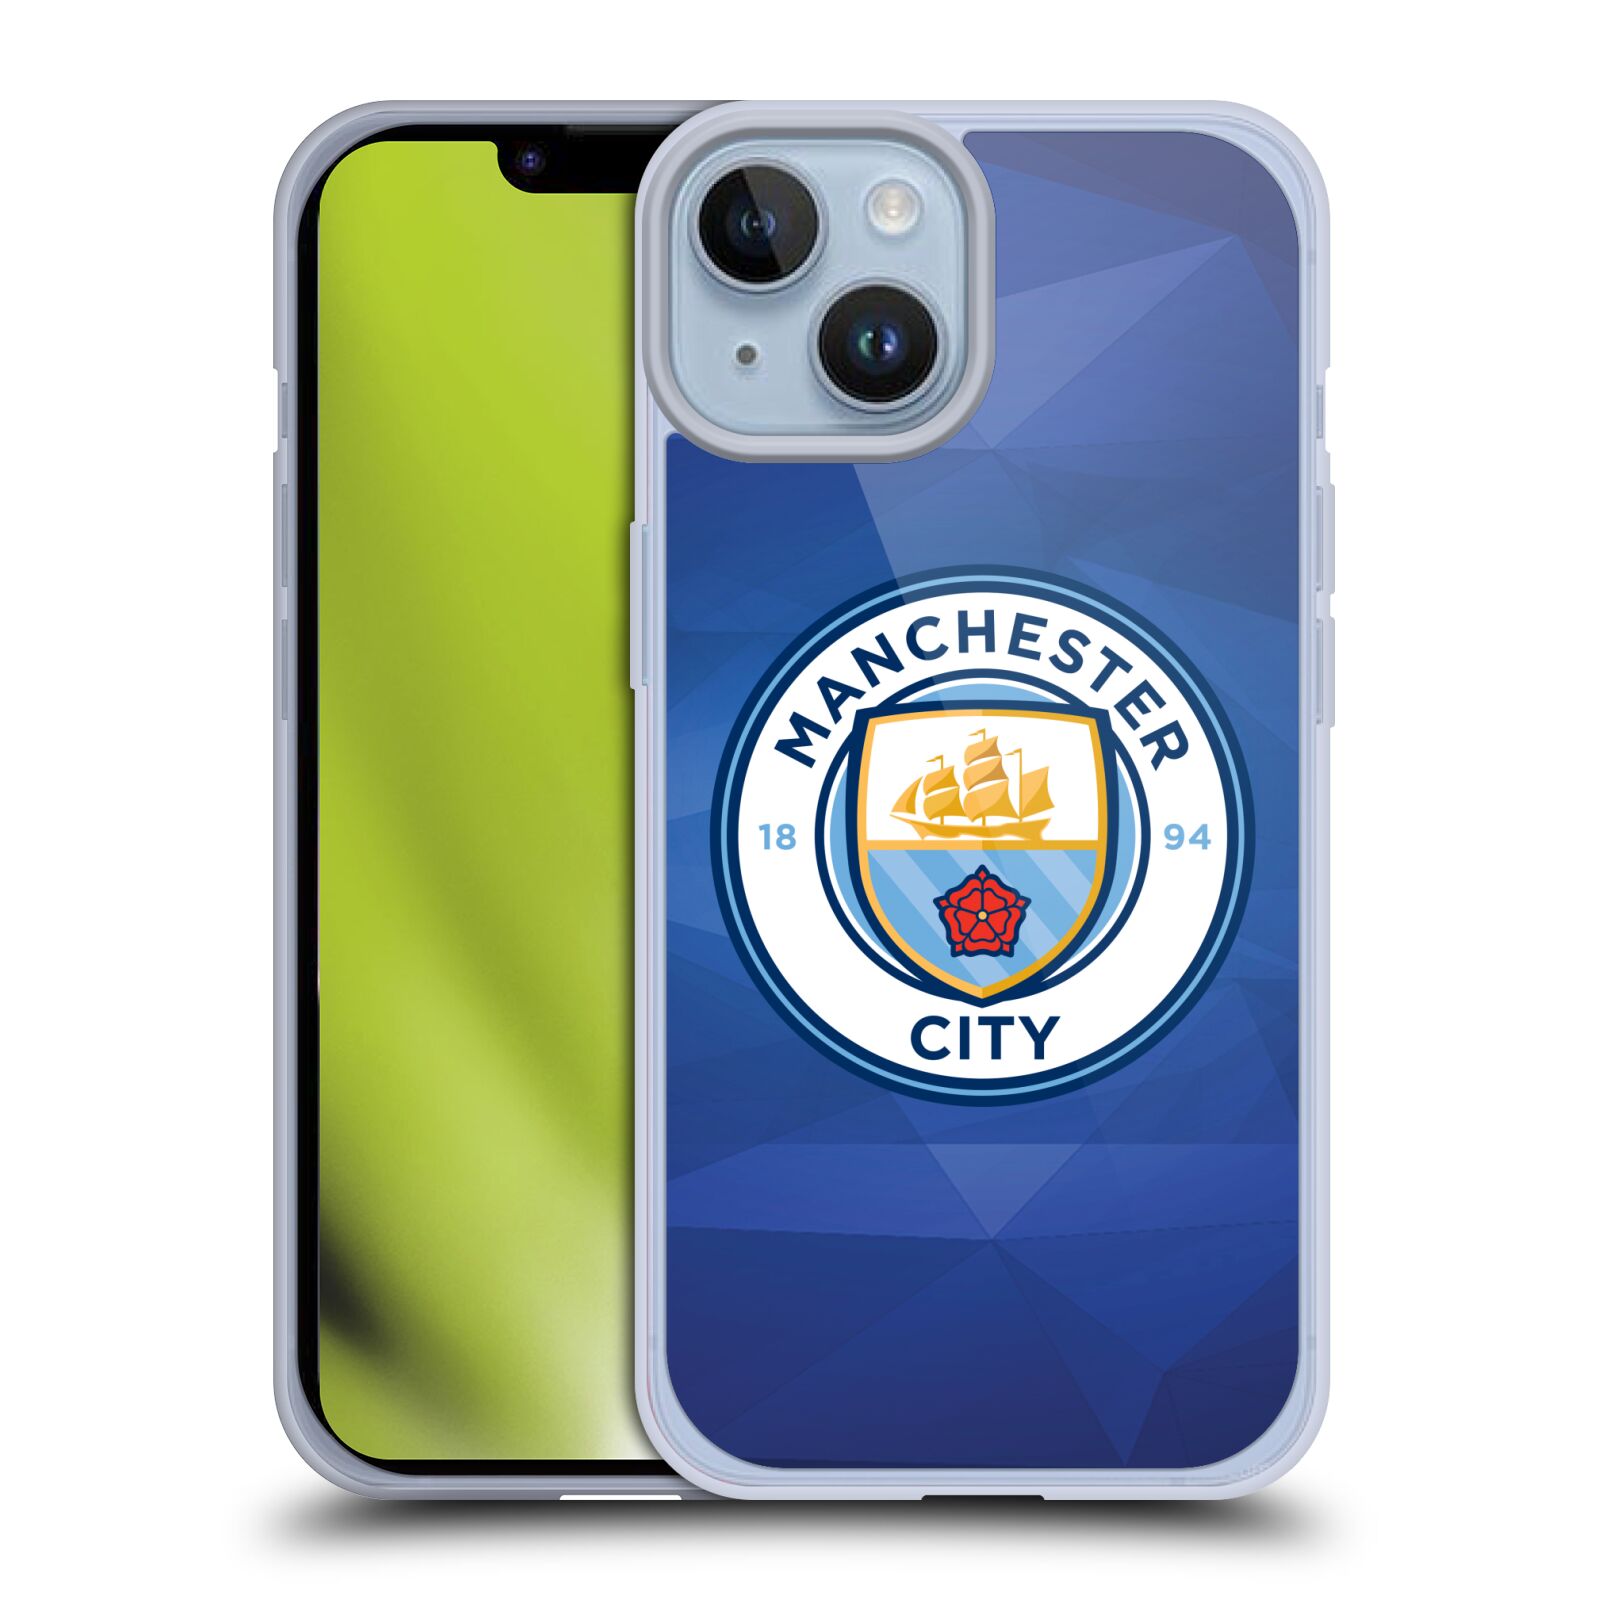 Silikonové pouzdro na mobil Apple iPhone 14 - Head Case - Manchester City FC - Modré nové logo